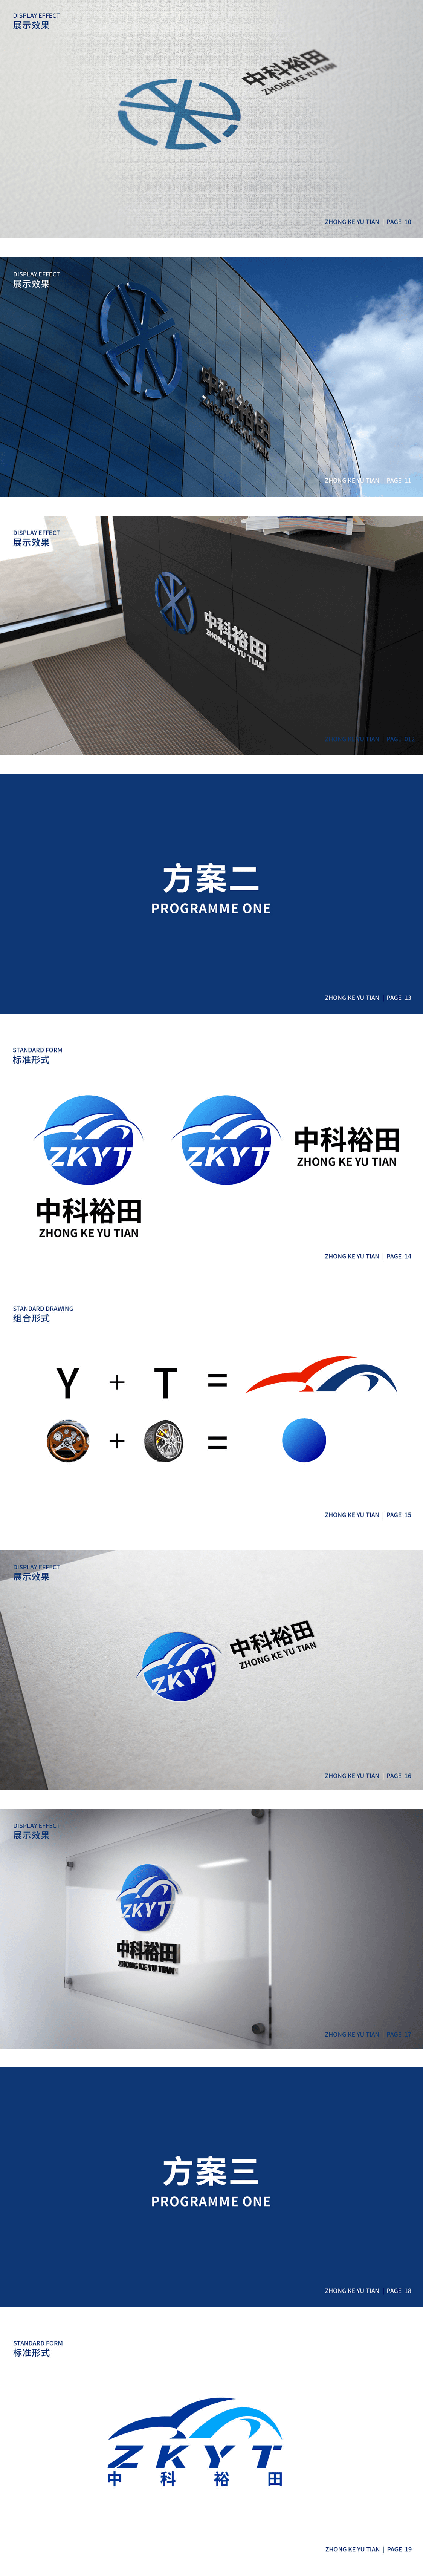 天得利项目案例 | 中科裕田品牌logo设计